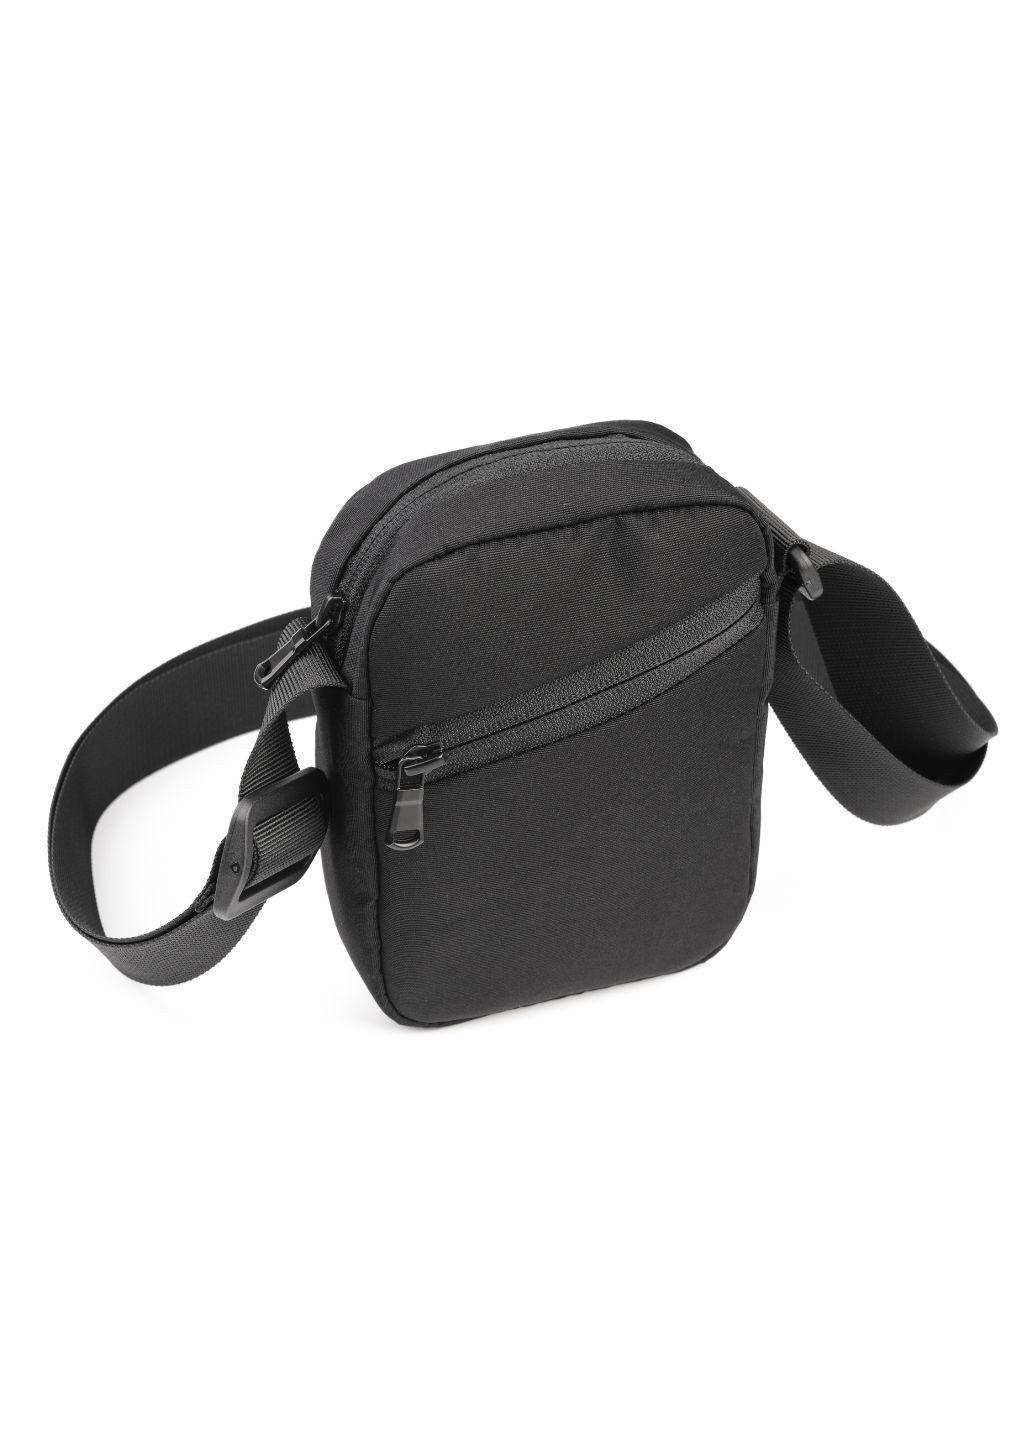 Мужская текстильная сумка через плечо, материал Оксфорд 600 Германия, чёрного цвета LQ 804710 (279851761)